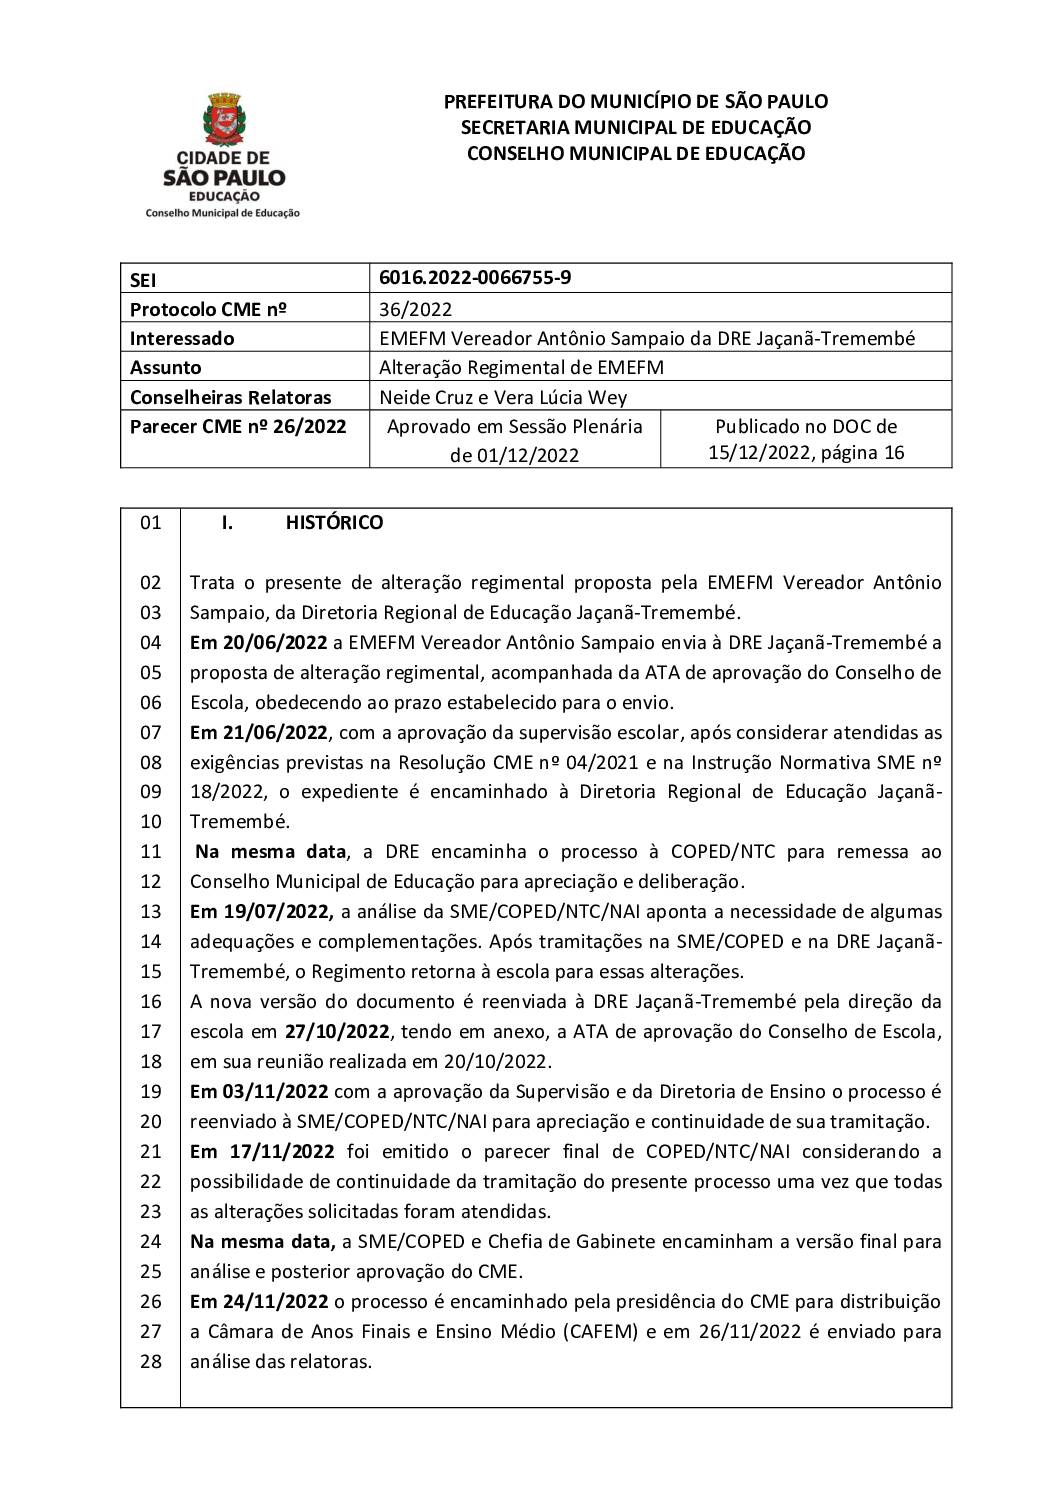 Parecer CME nº 26/2022 - EMEFM Vereador Antônio Sampaio (DRE JT) - Alteração Regimental de EMEFM